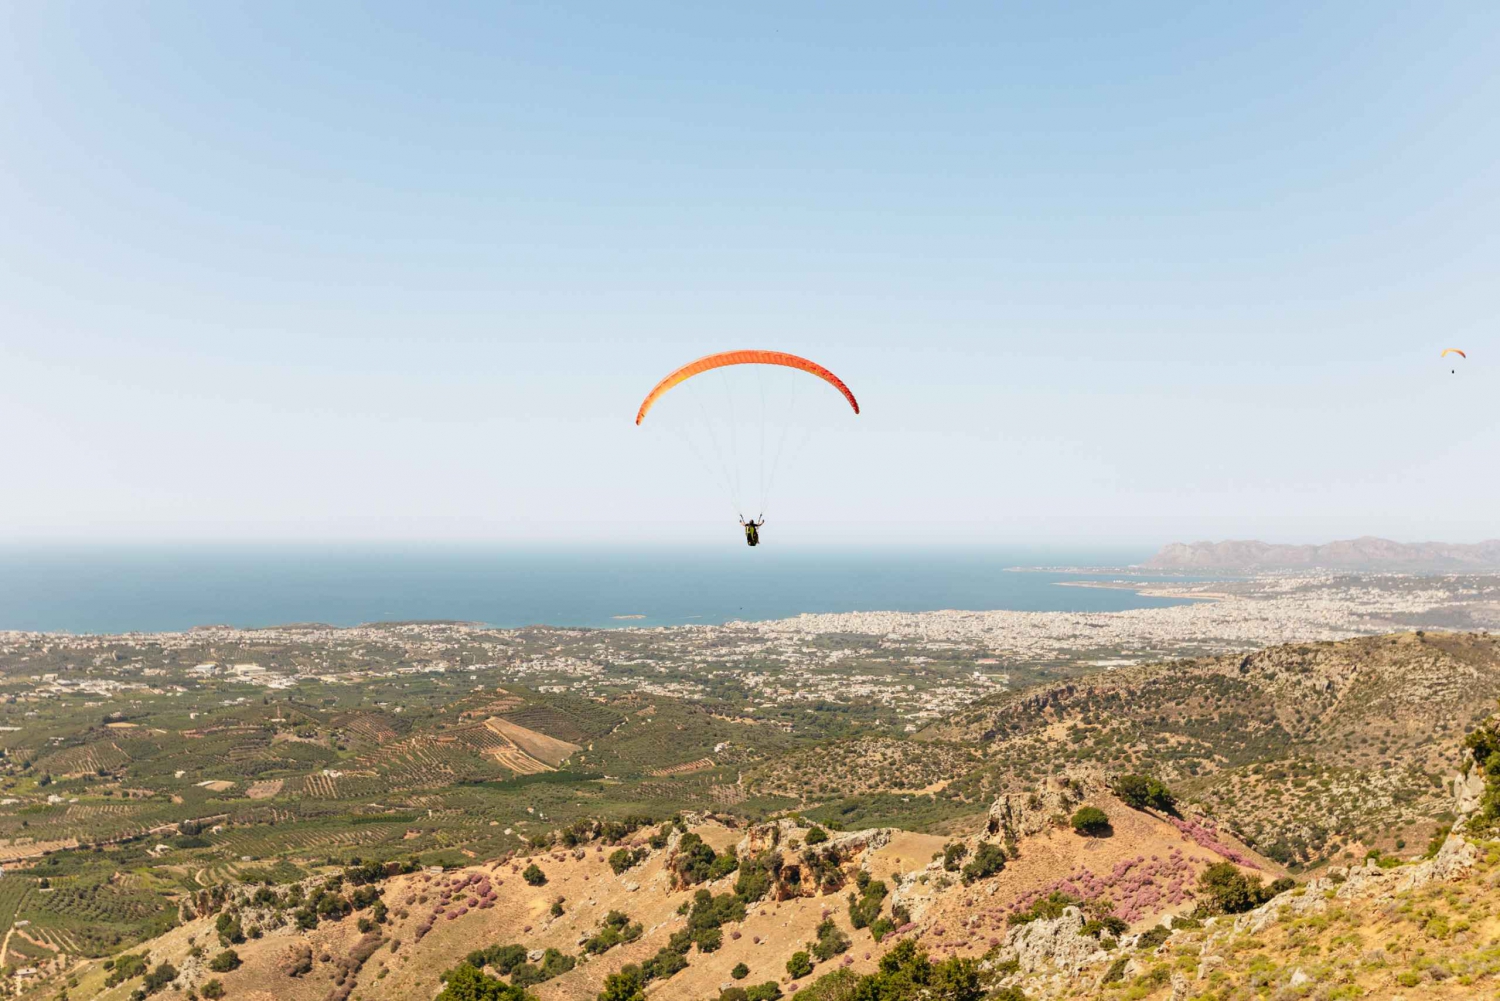 Chania: Tandemflyvning med paraglider